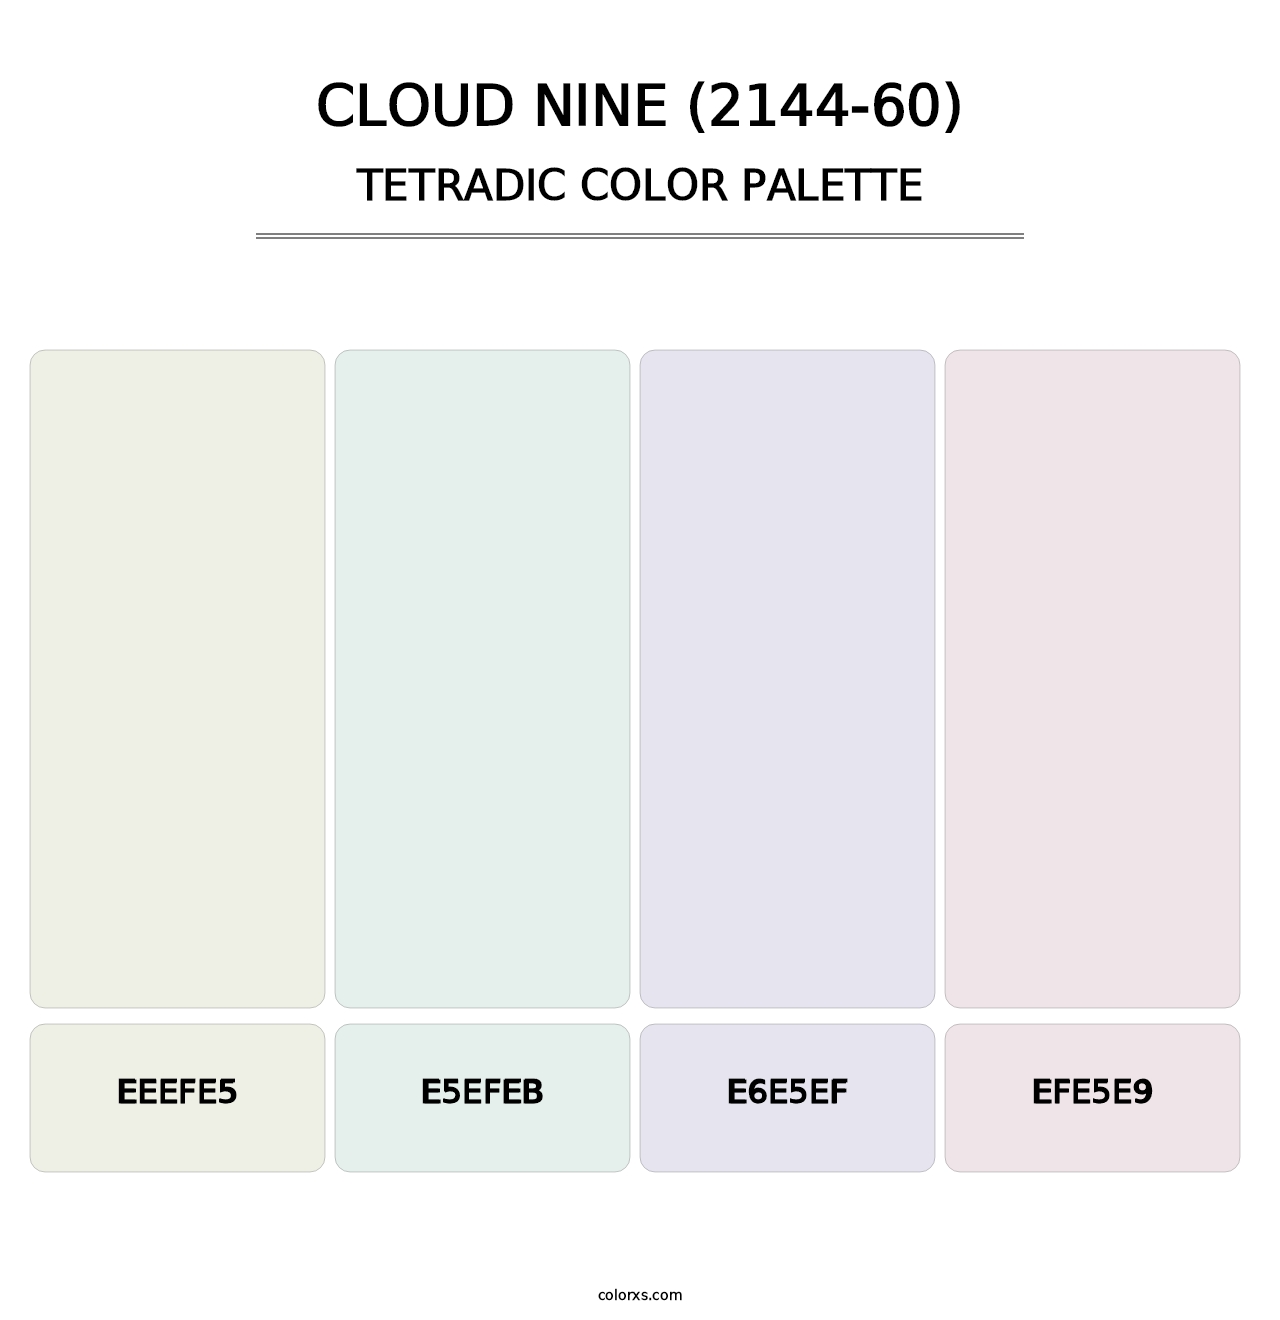 Cloud Nine (2144-60) - Tetradic Color Palette